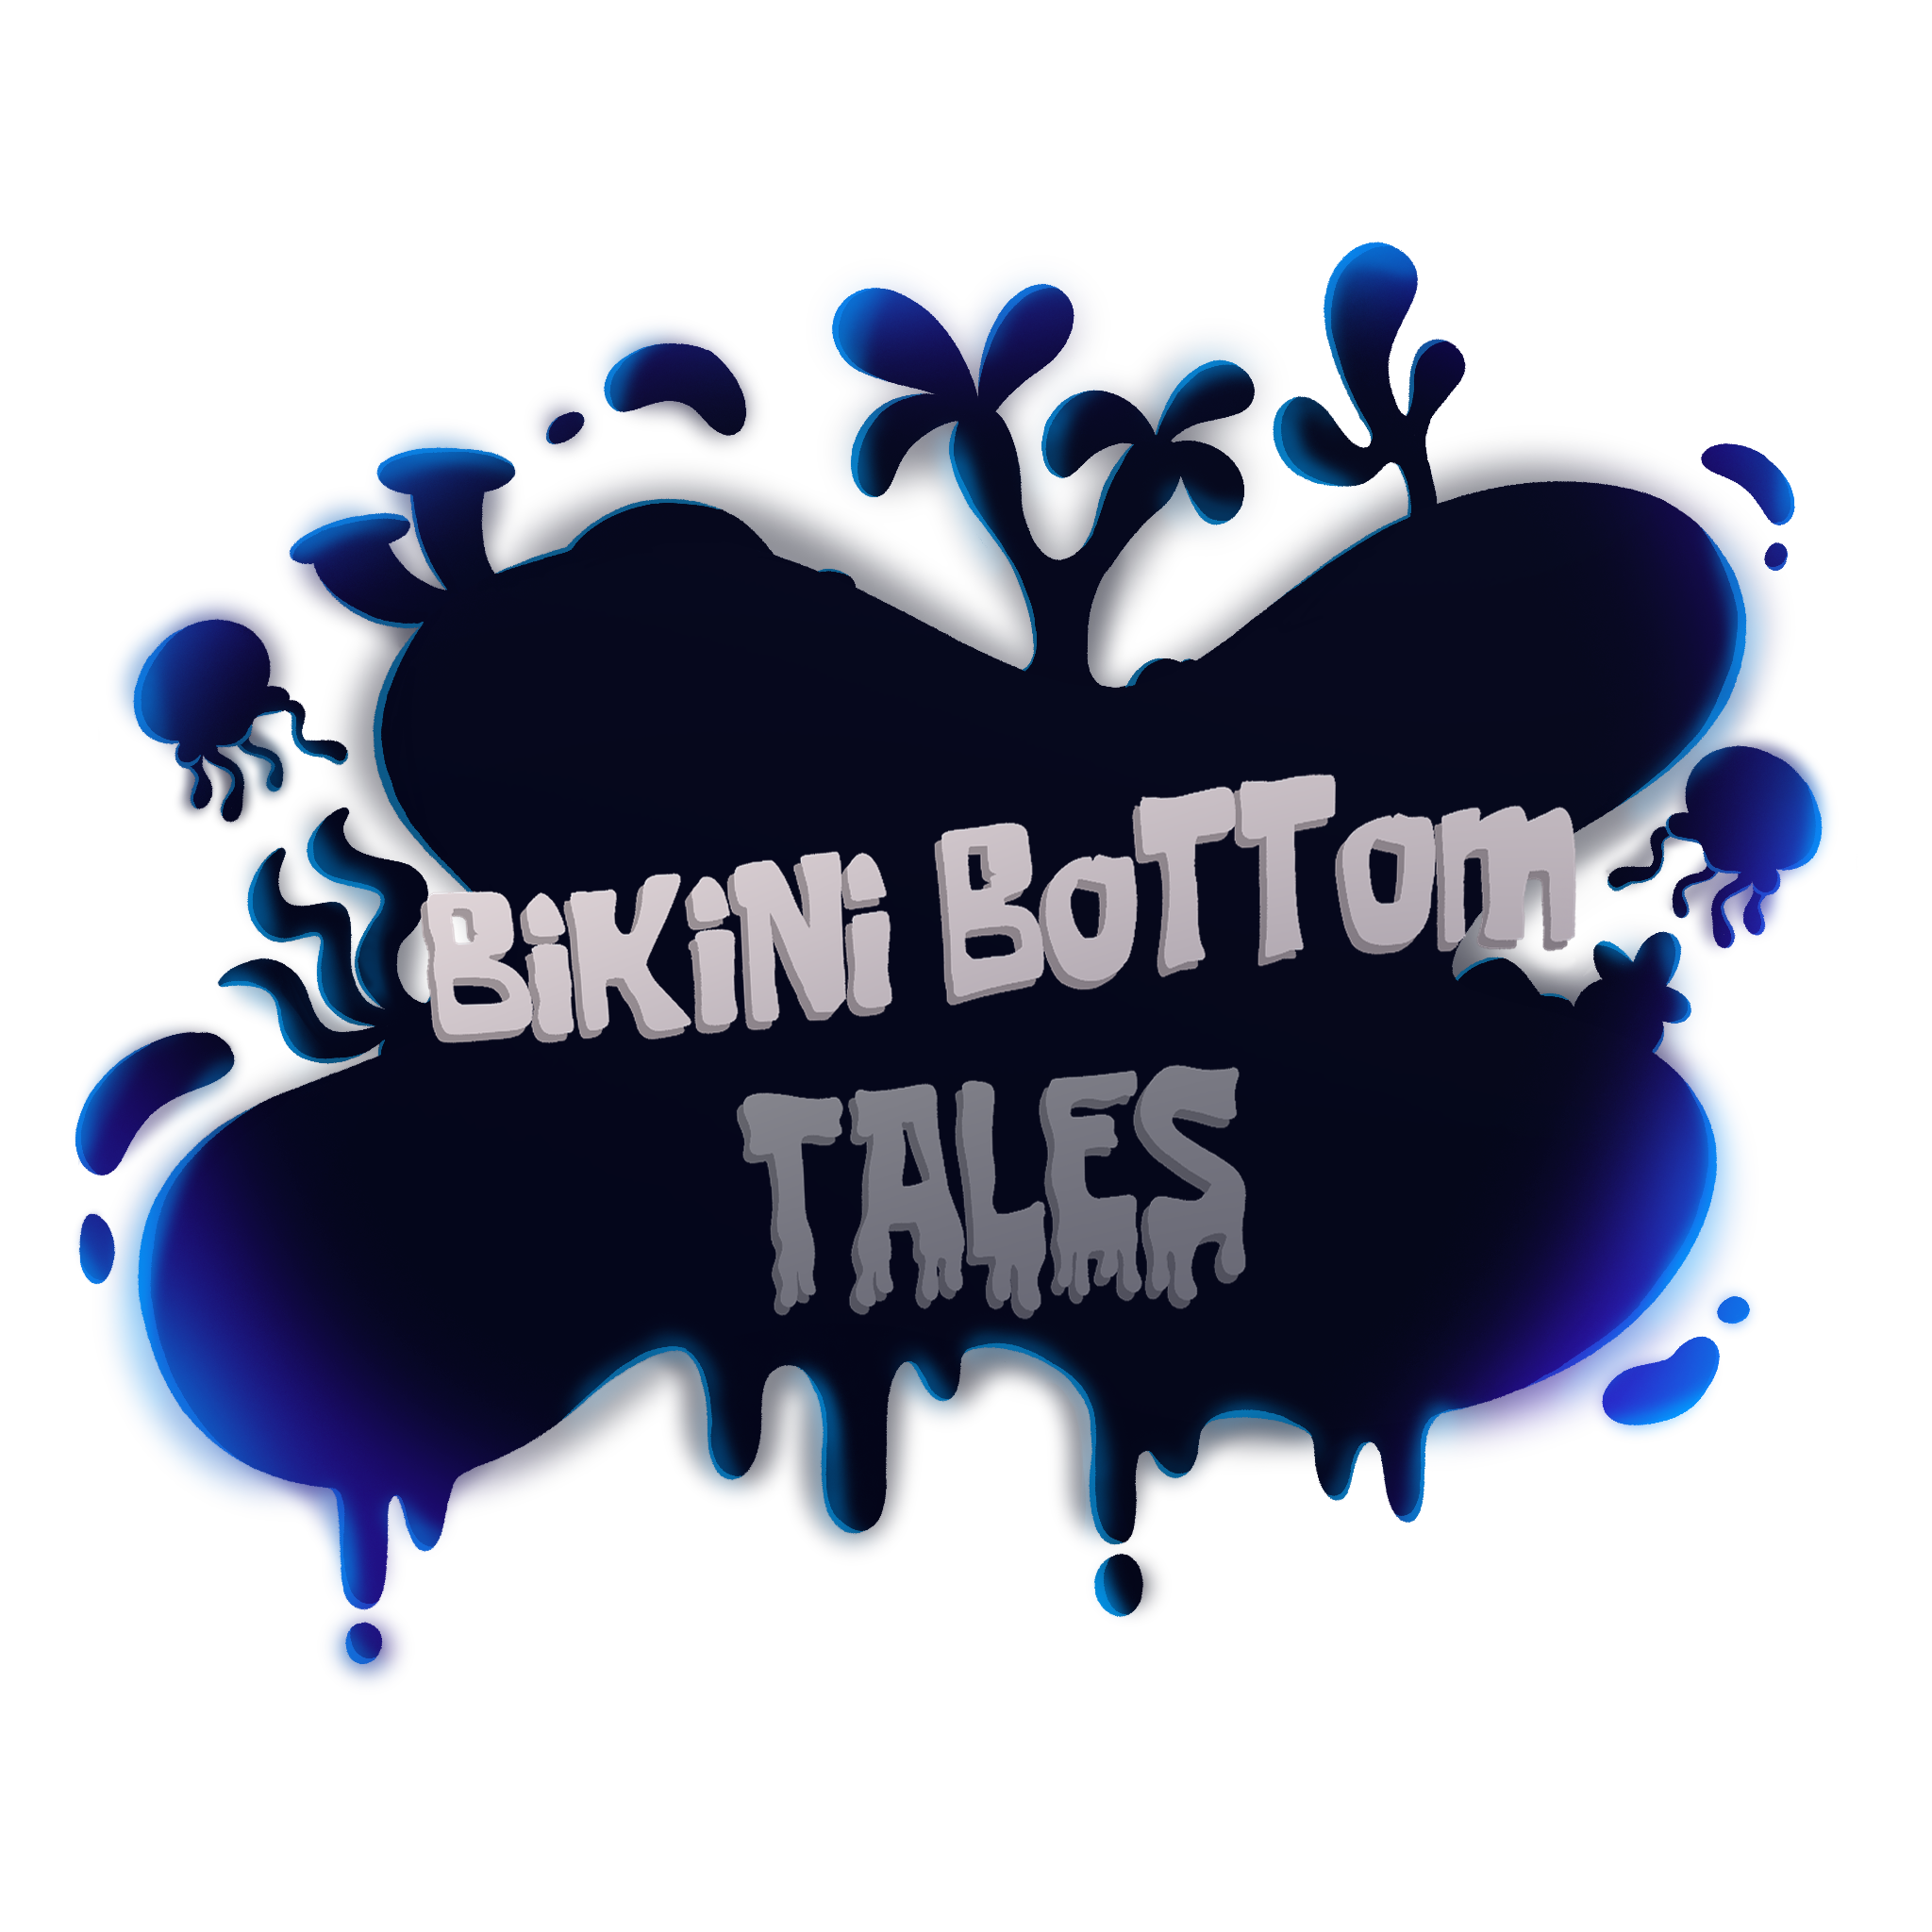 Bikini Bottom Tales